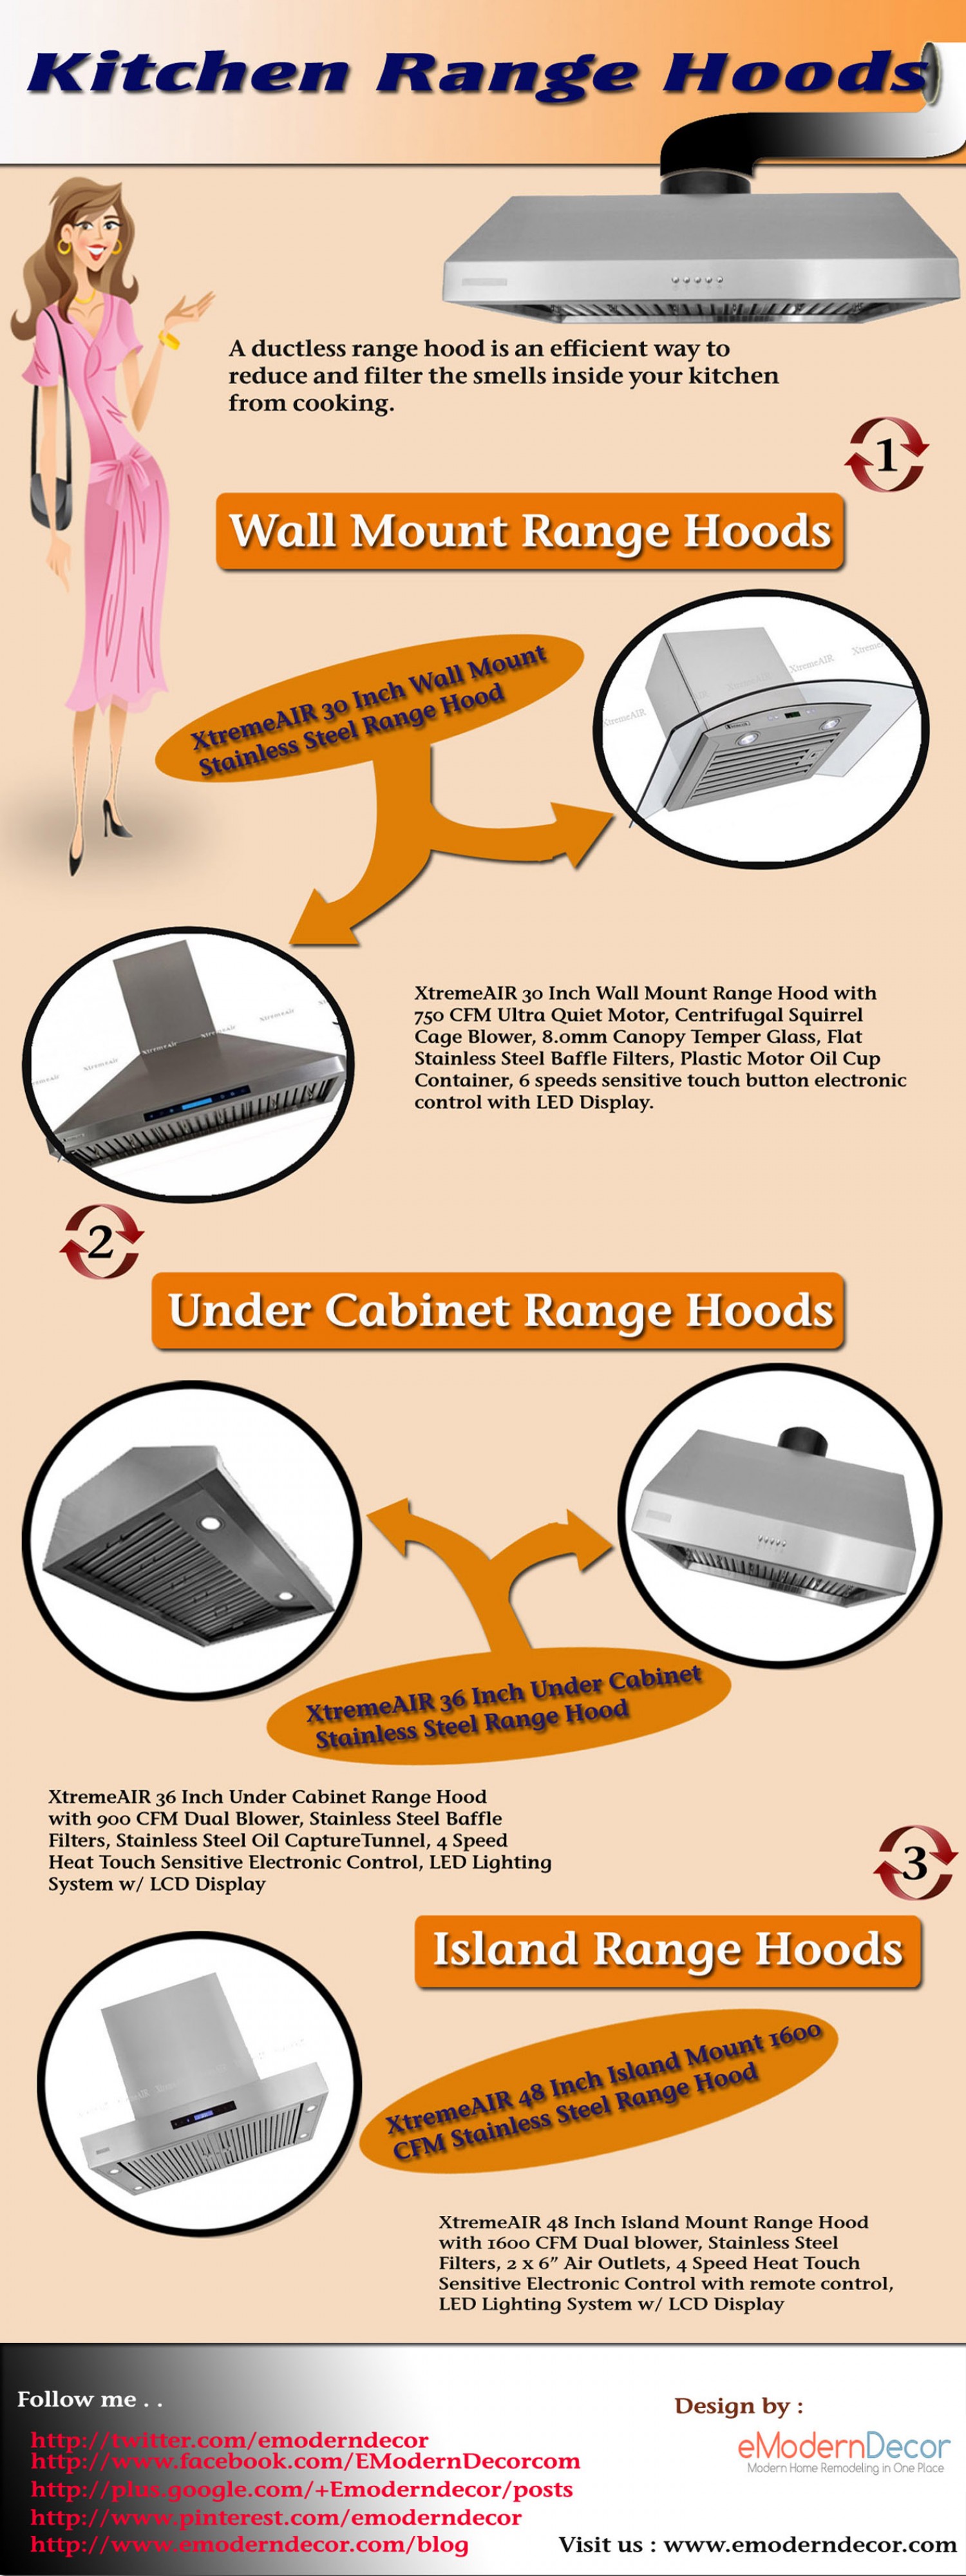 Range hoods from eModernDecor